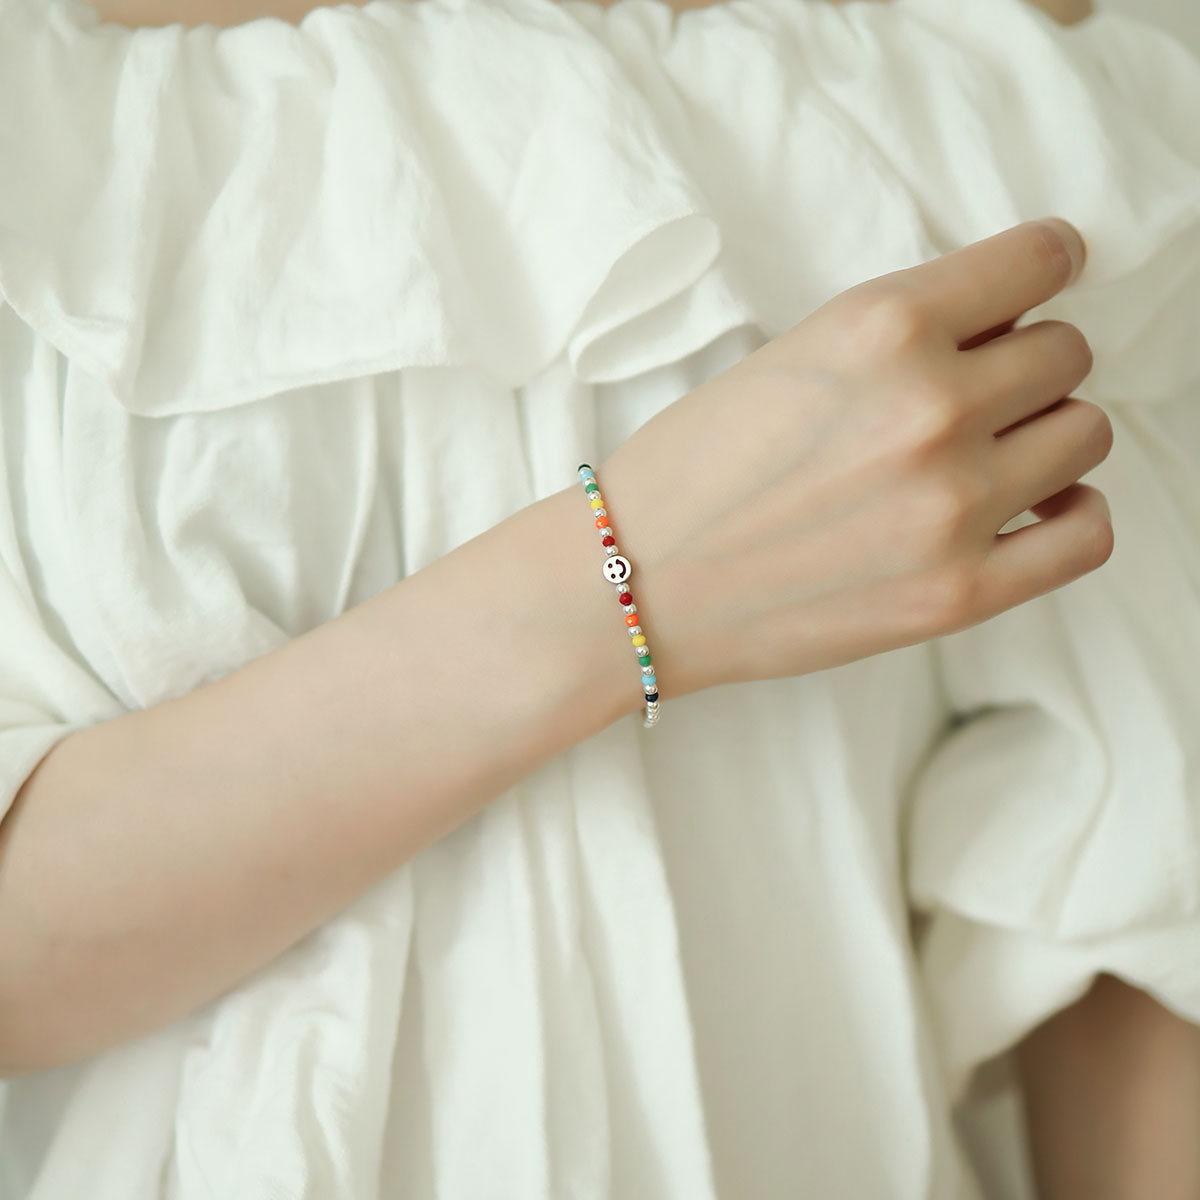 Women wear a sterling silver elasticated bracelet.